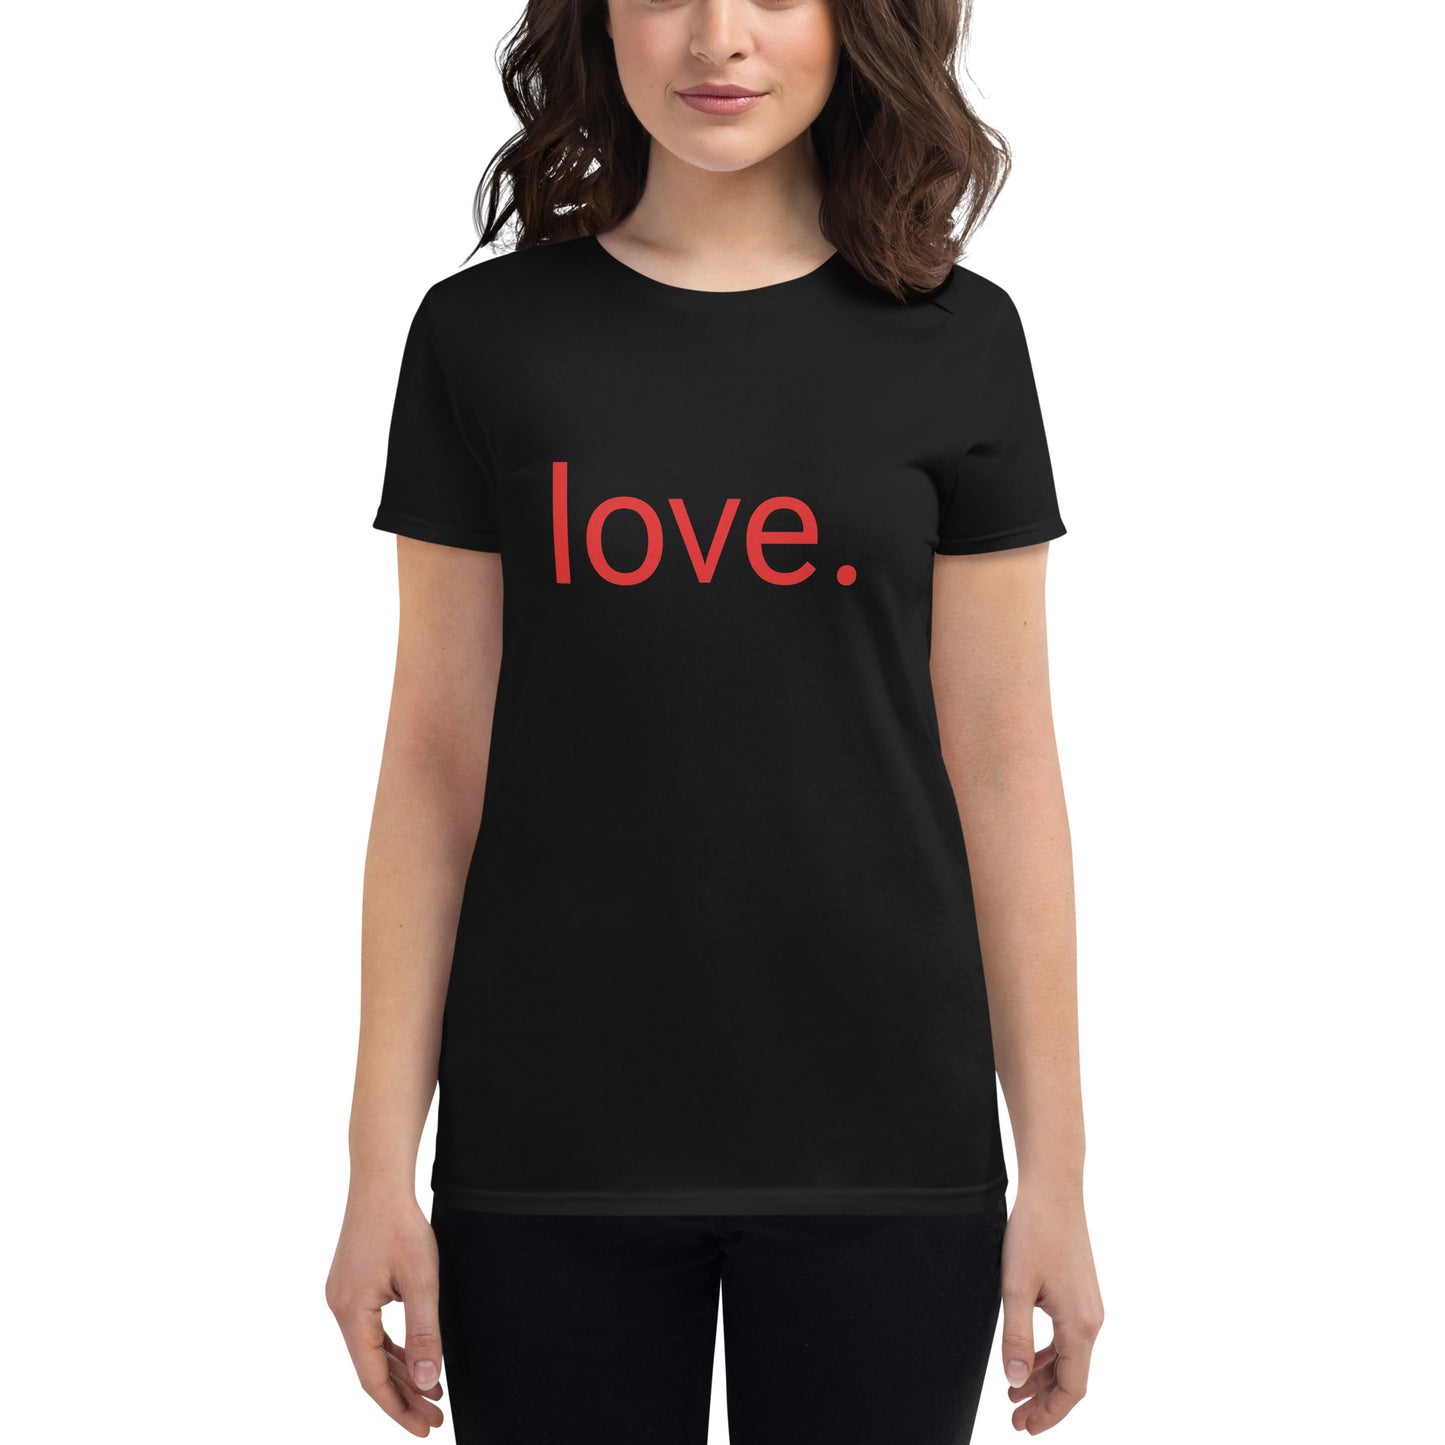 Love. Women's Short Sleeve T-Shirt